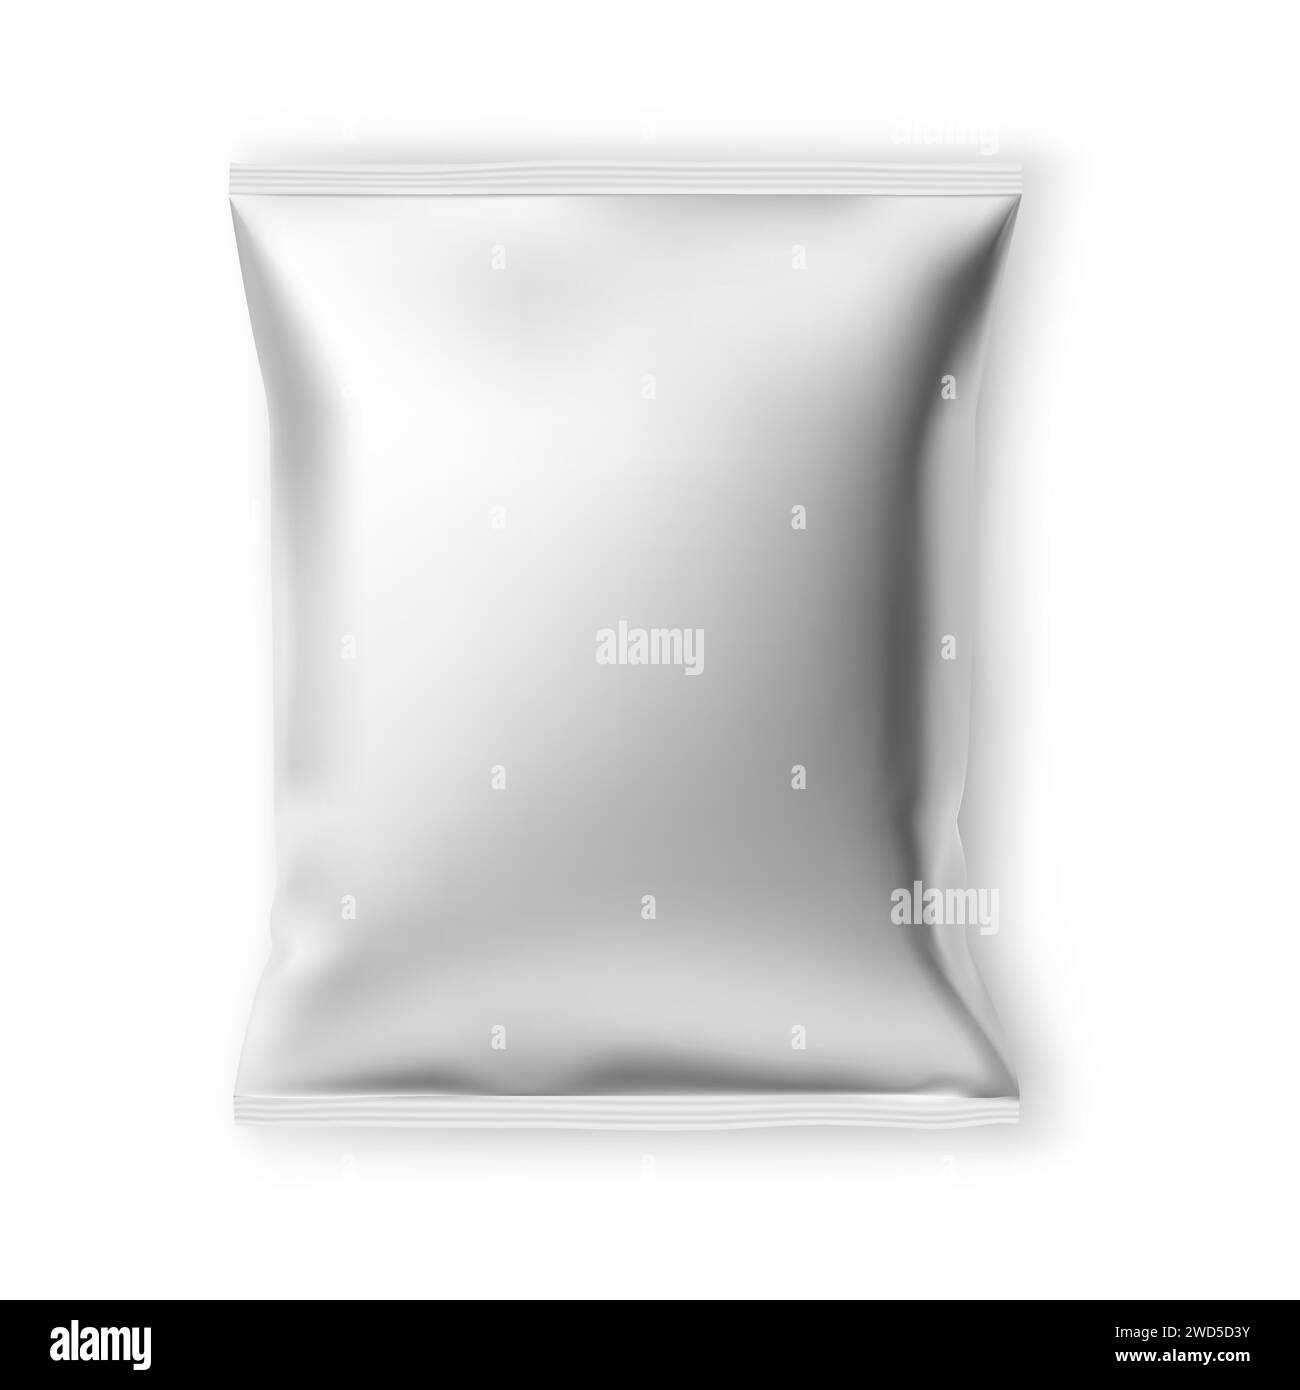 Modell für Folienverpackungen mit Kartoffelchips. Chip-Snack-Beutel-Design, isoliert auf weißem Hintergrund. Elegante silberne Beutelschablone für leckere appetitliche Scheiben, Stock Vektor